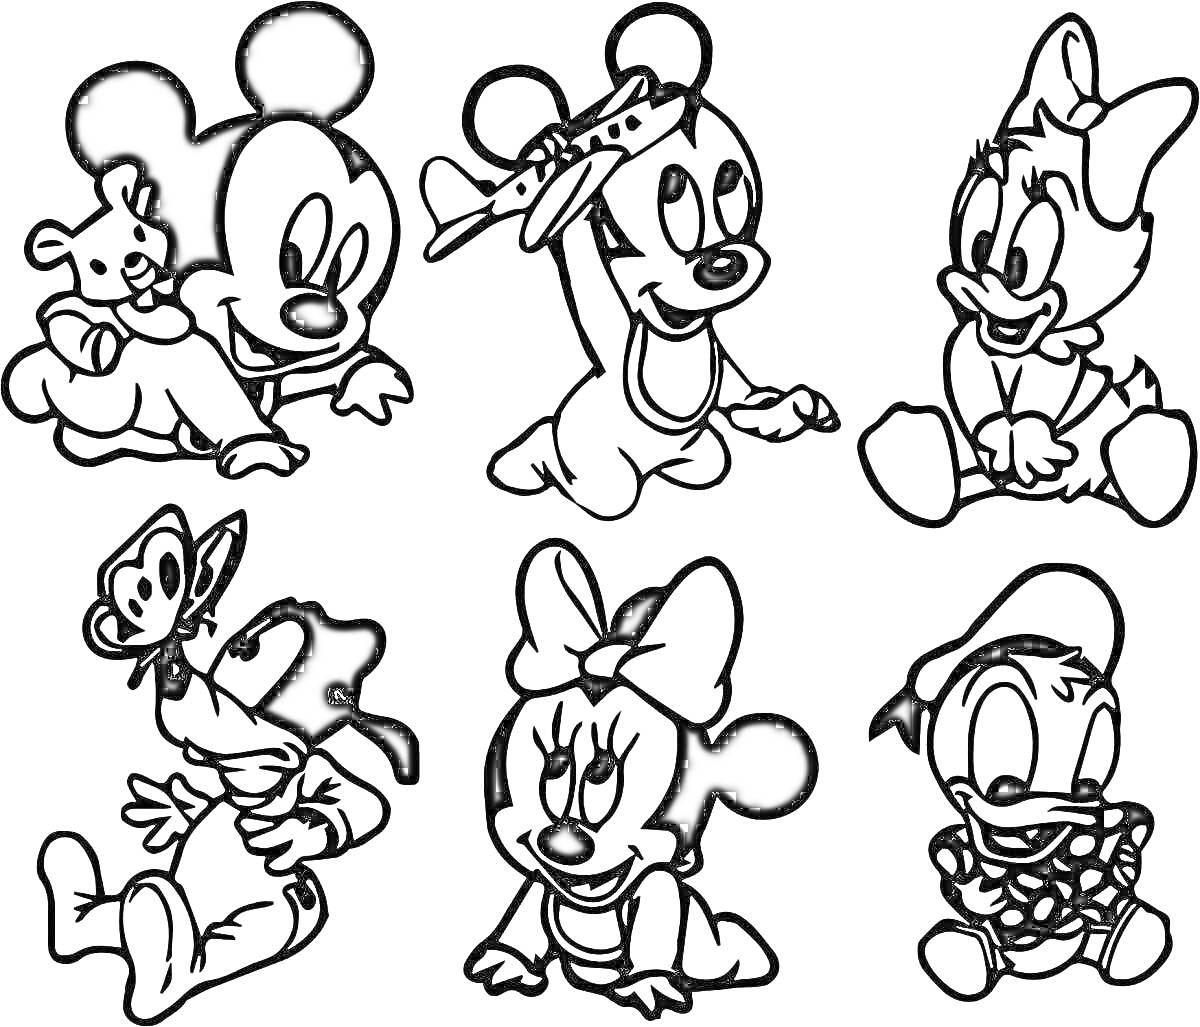 Раскраска Маленькие мультяшные персонажи: Микки с игрушкой, Микки с самолетиком, малышка в сетчатом платочке, малыш с бабочкой на носу, мини с бантиком, утенок в платочке.